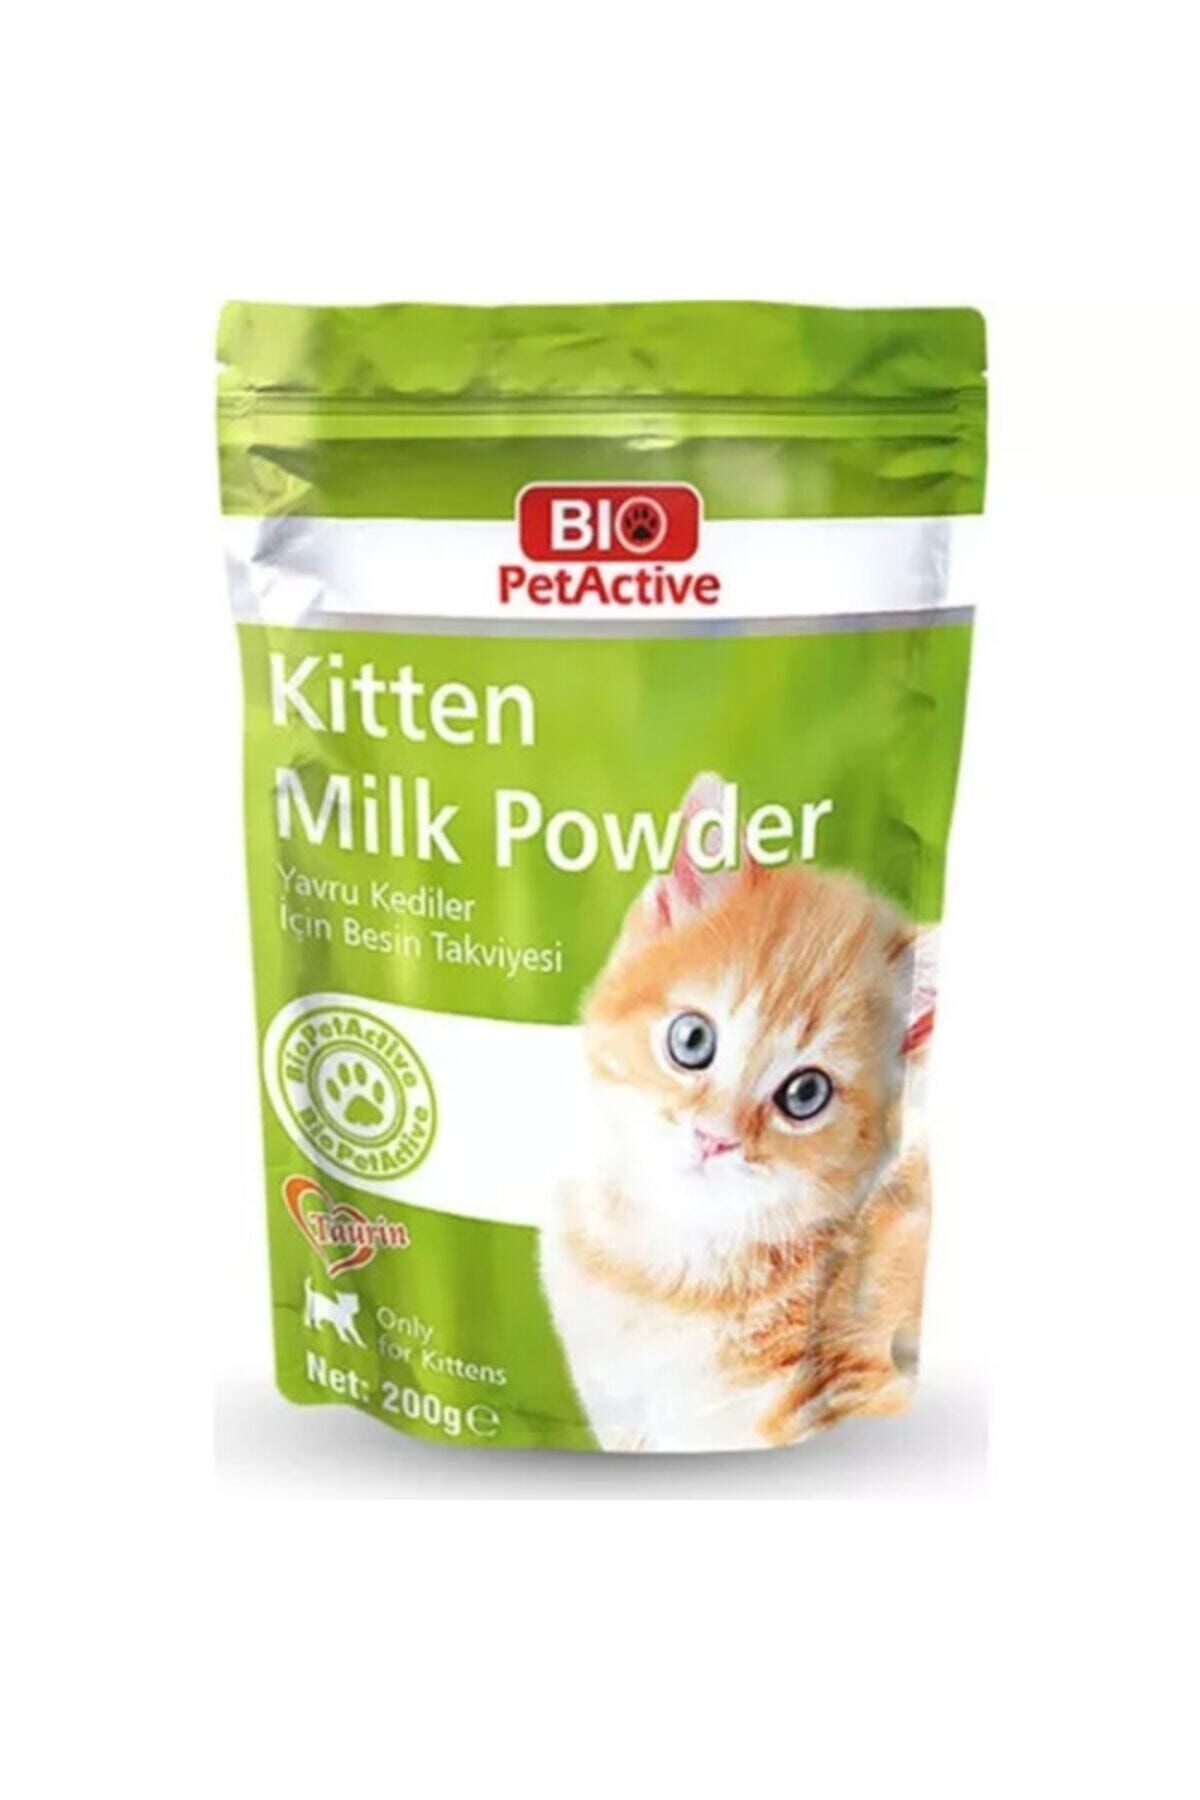 Bio PetActive Biopetactive Kitten Süt Tozu 200 g